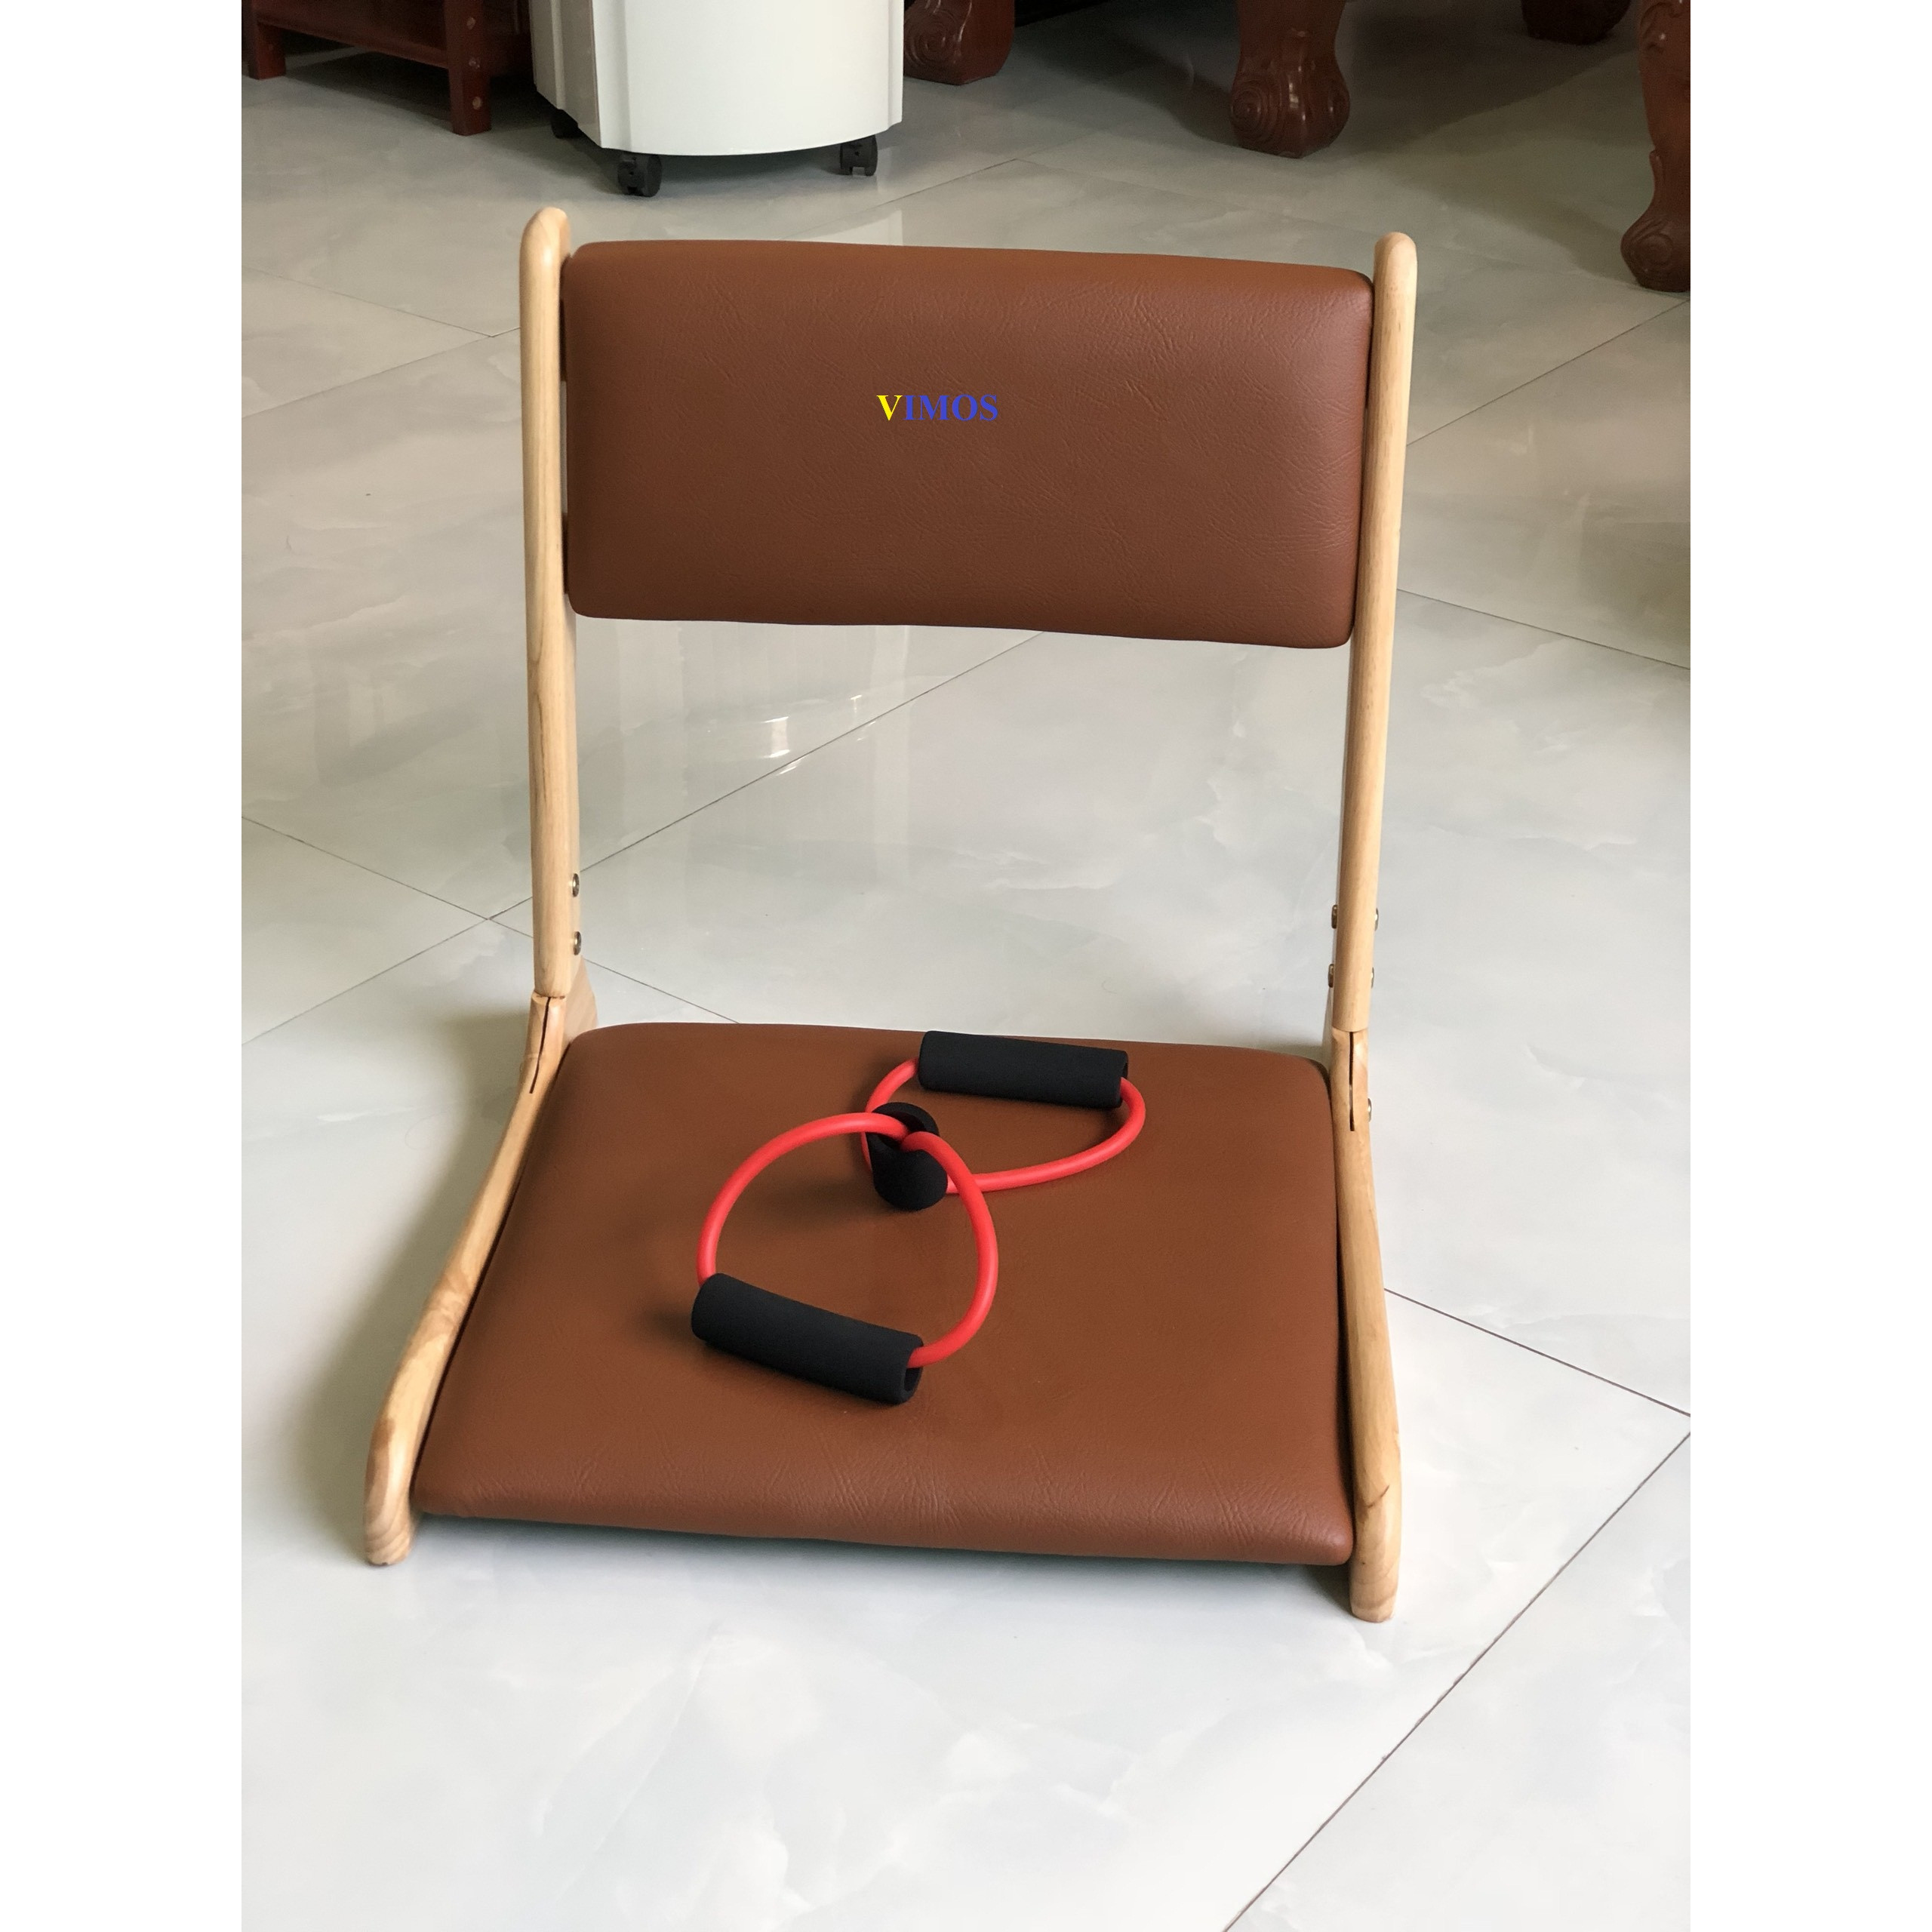 Ghế bệt tựa lưng, ghế lười bằng gỗ VIMOS -Tặng kèm dây kéo tập thể dục( màu ngẫu nhiên)